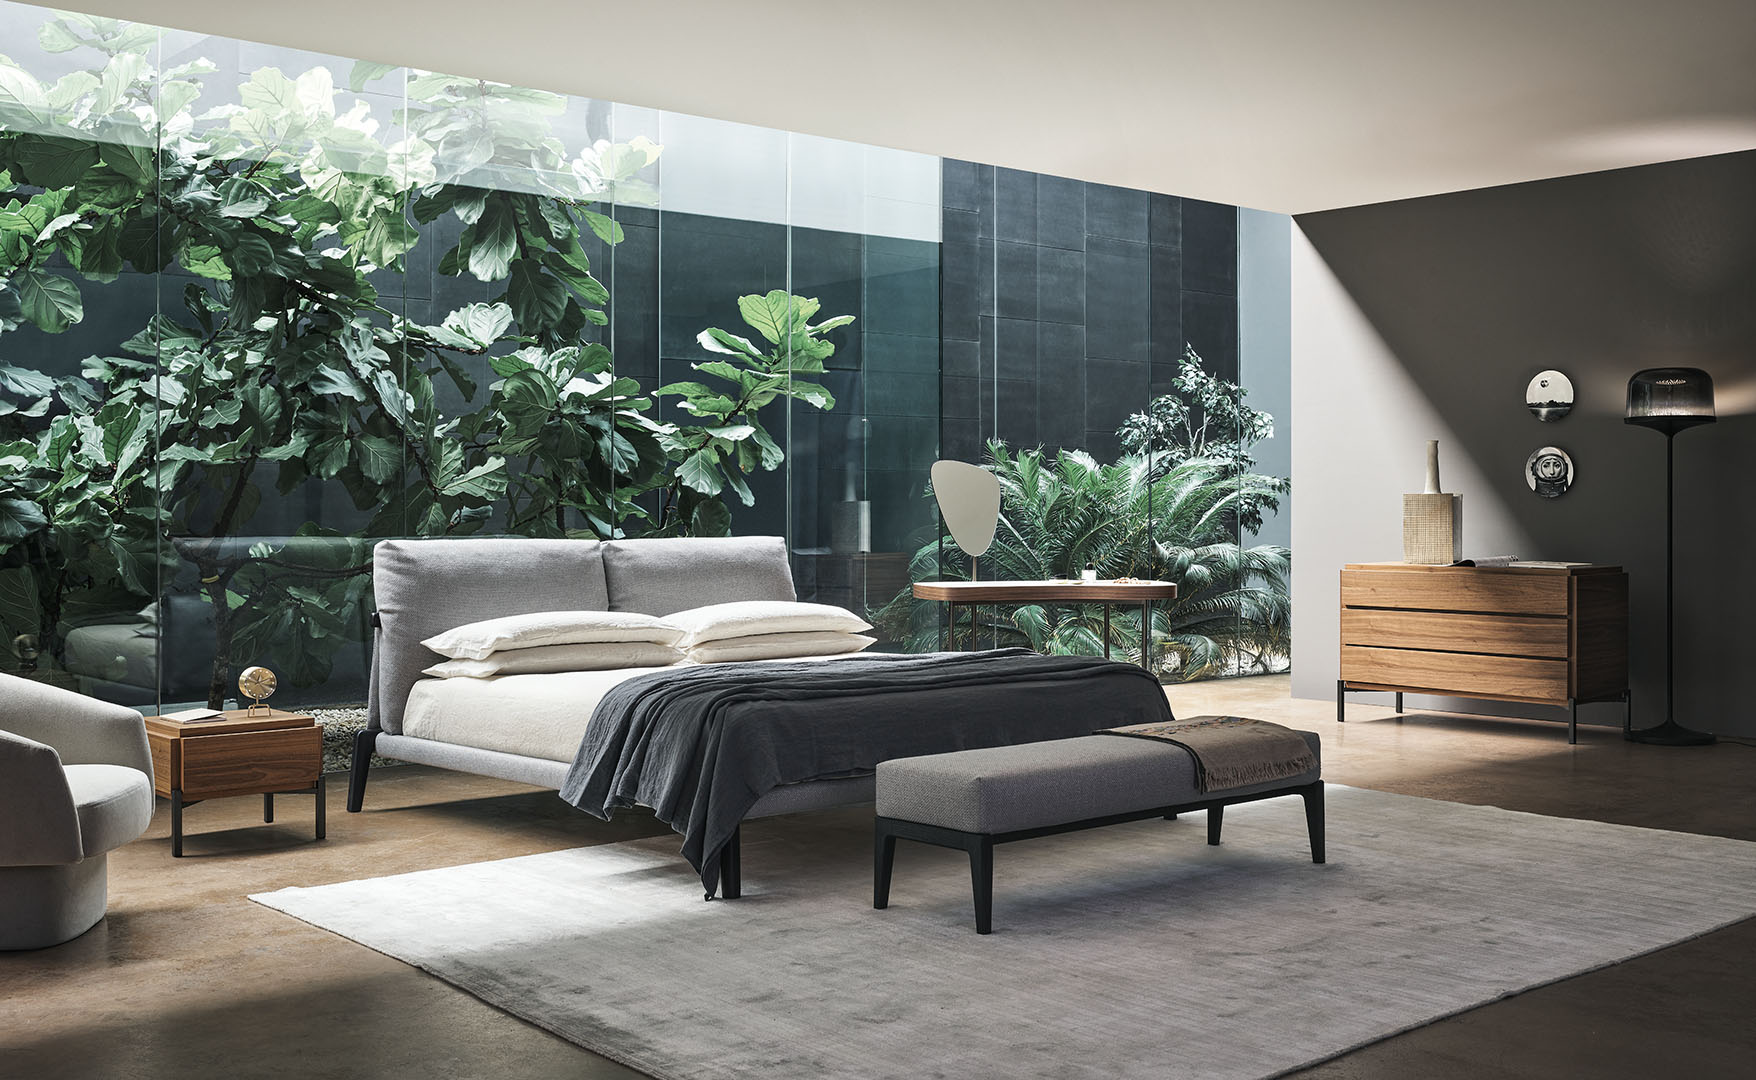 Ložnice spojuje moderní design s přírodními prvky, nabízí perfektní útočiště pro odpočinek v obklopení rostlin.